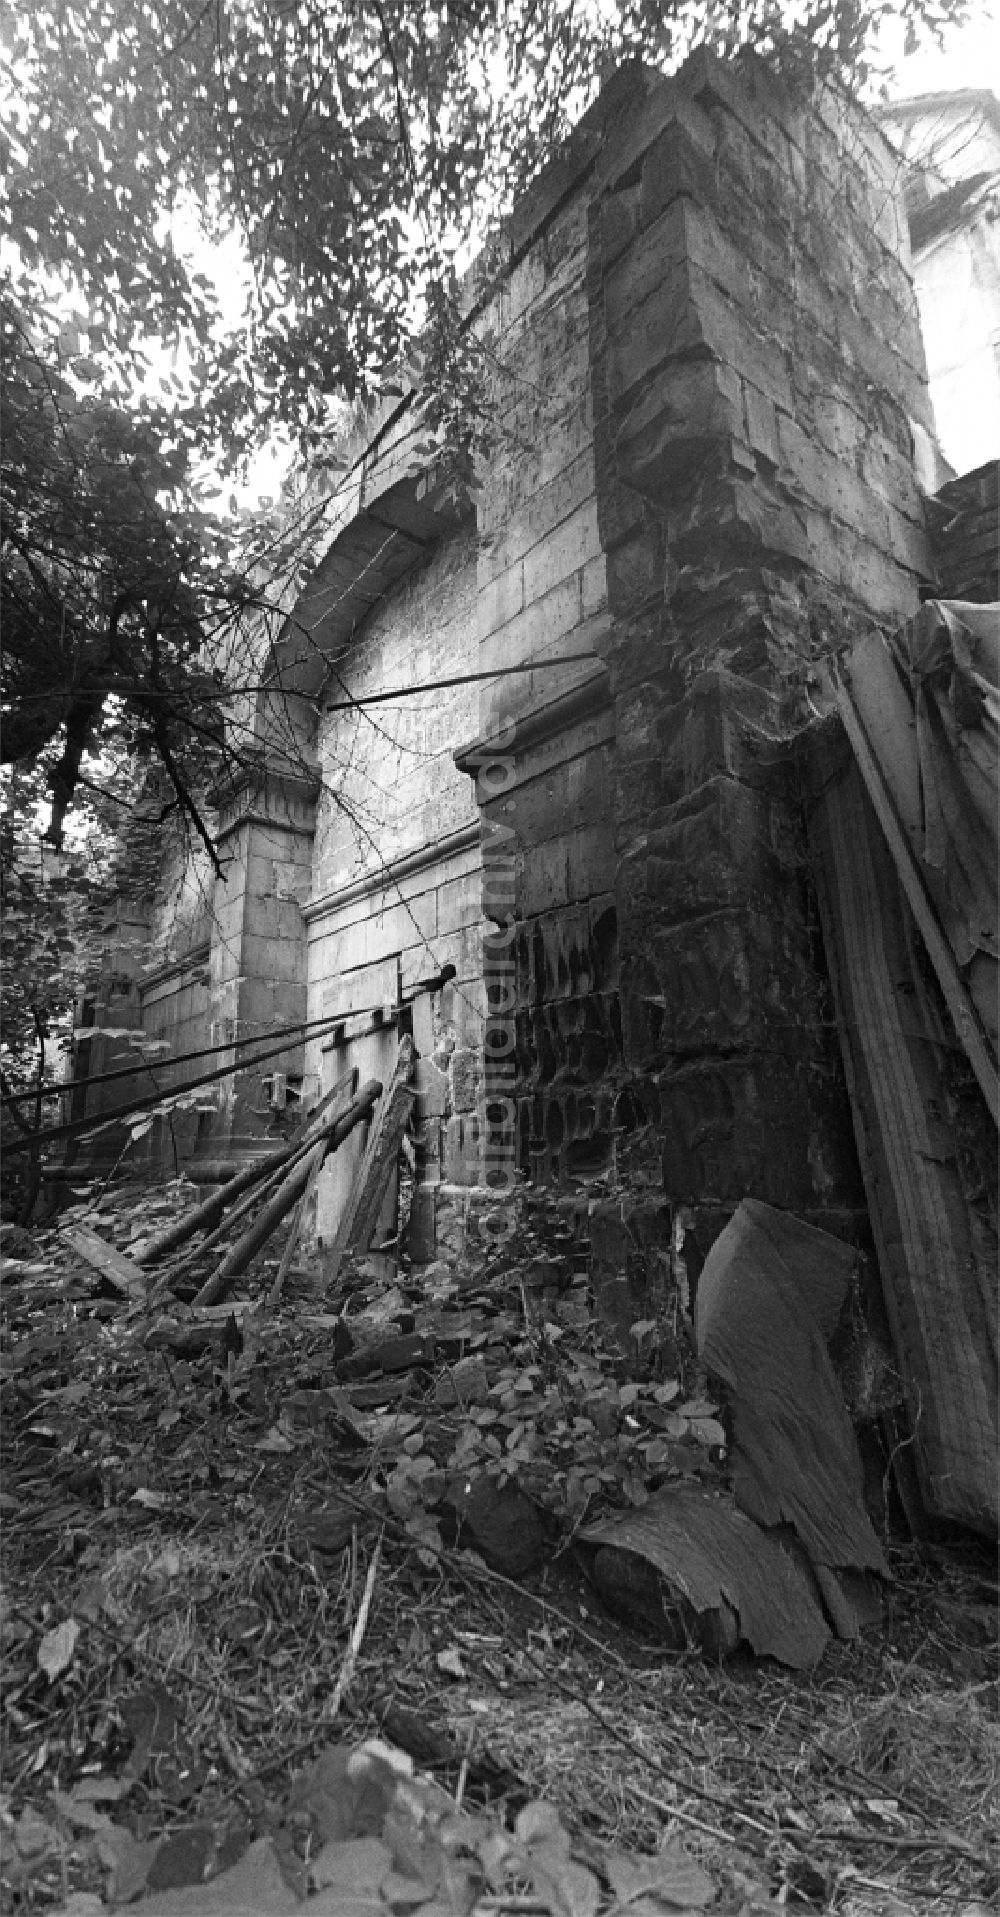 DDR-Fotoarchiv: Halberstadt - Ruinen Rest der Synagoge zwischen Bakenstraße und Judenstraße in Halberstadt in Sachsen-Anhalt in der DDR